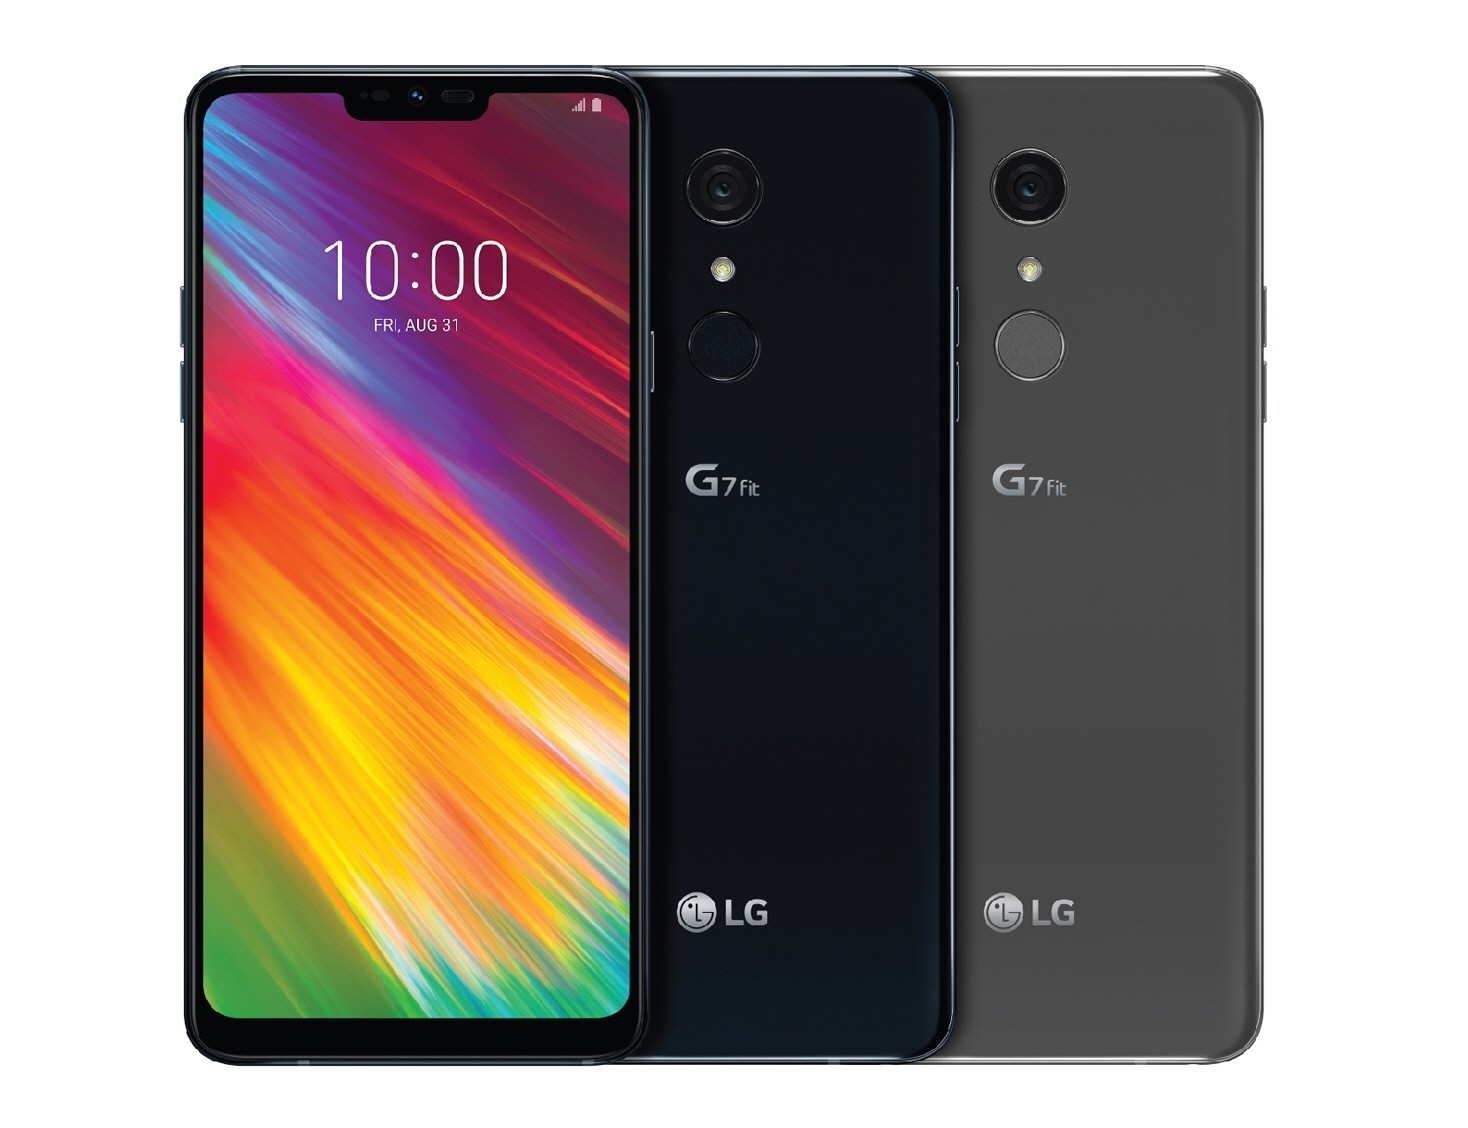 LG G7 Fit finalmente saldrá a la venta esta semana en Europa, Asia y otros mercados